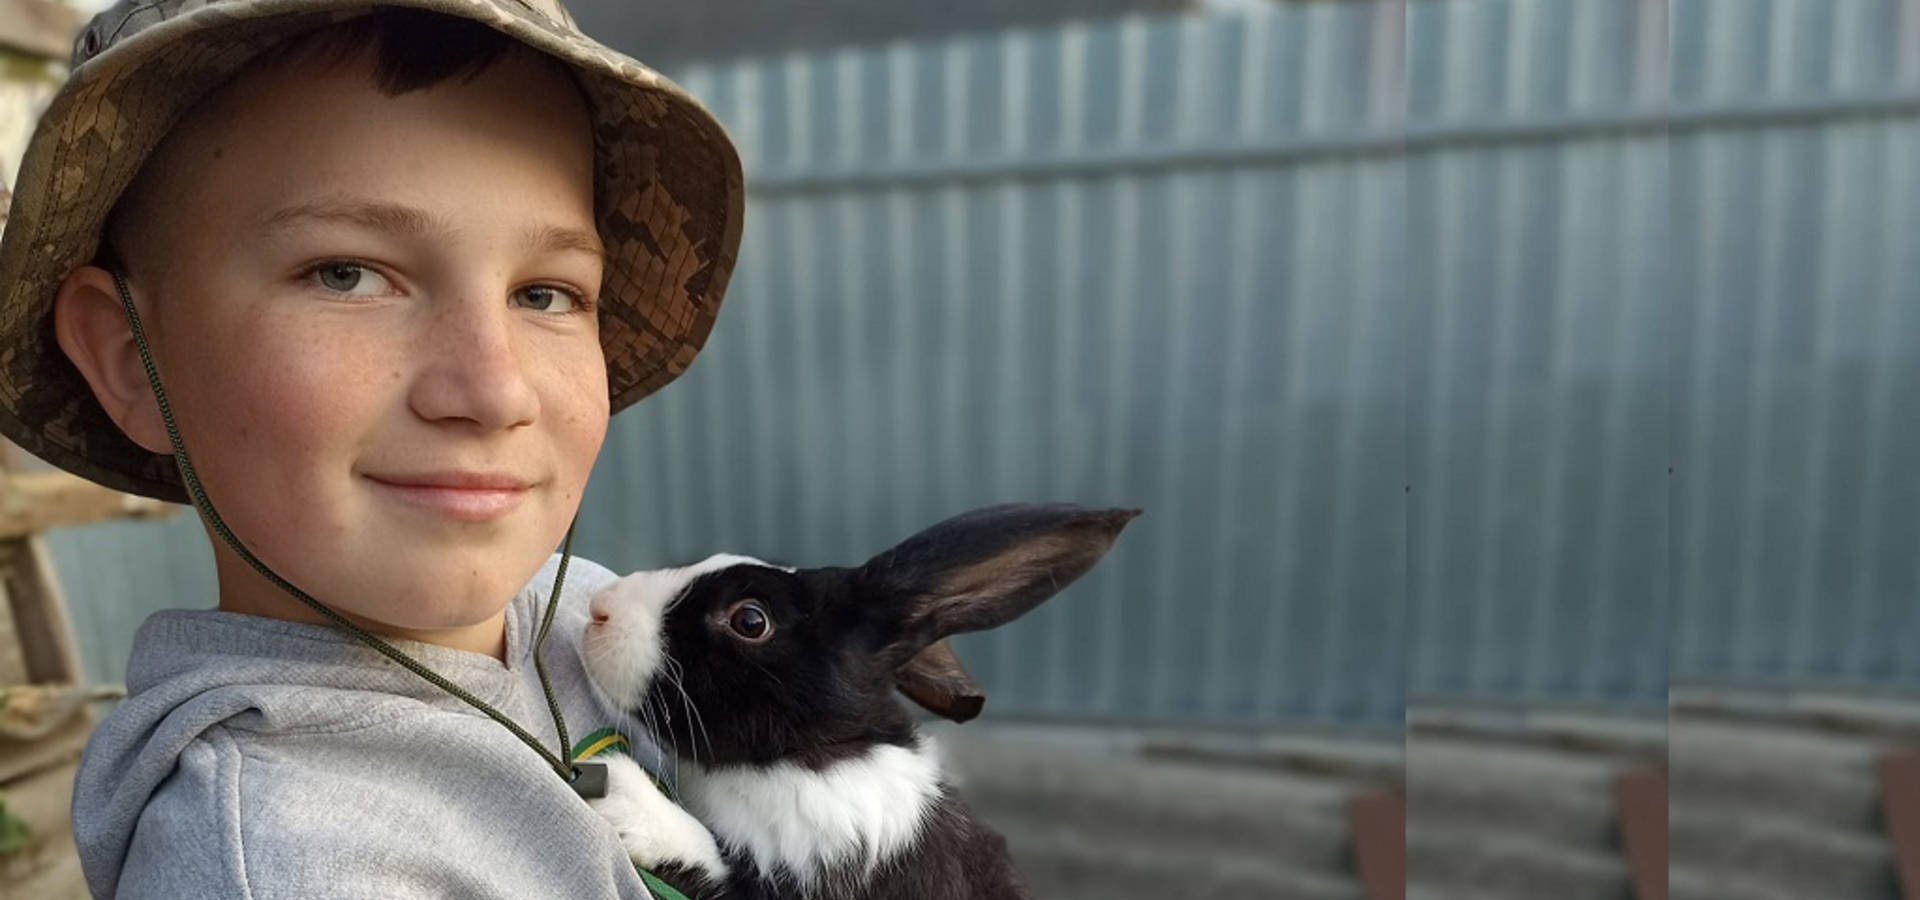 Дванадцятирічний хлопчик з Хмільницького району продає вирощені кролі, щоб зібрати кошти для ЗСУ